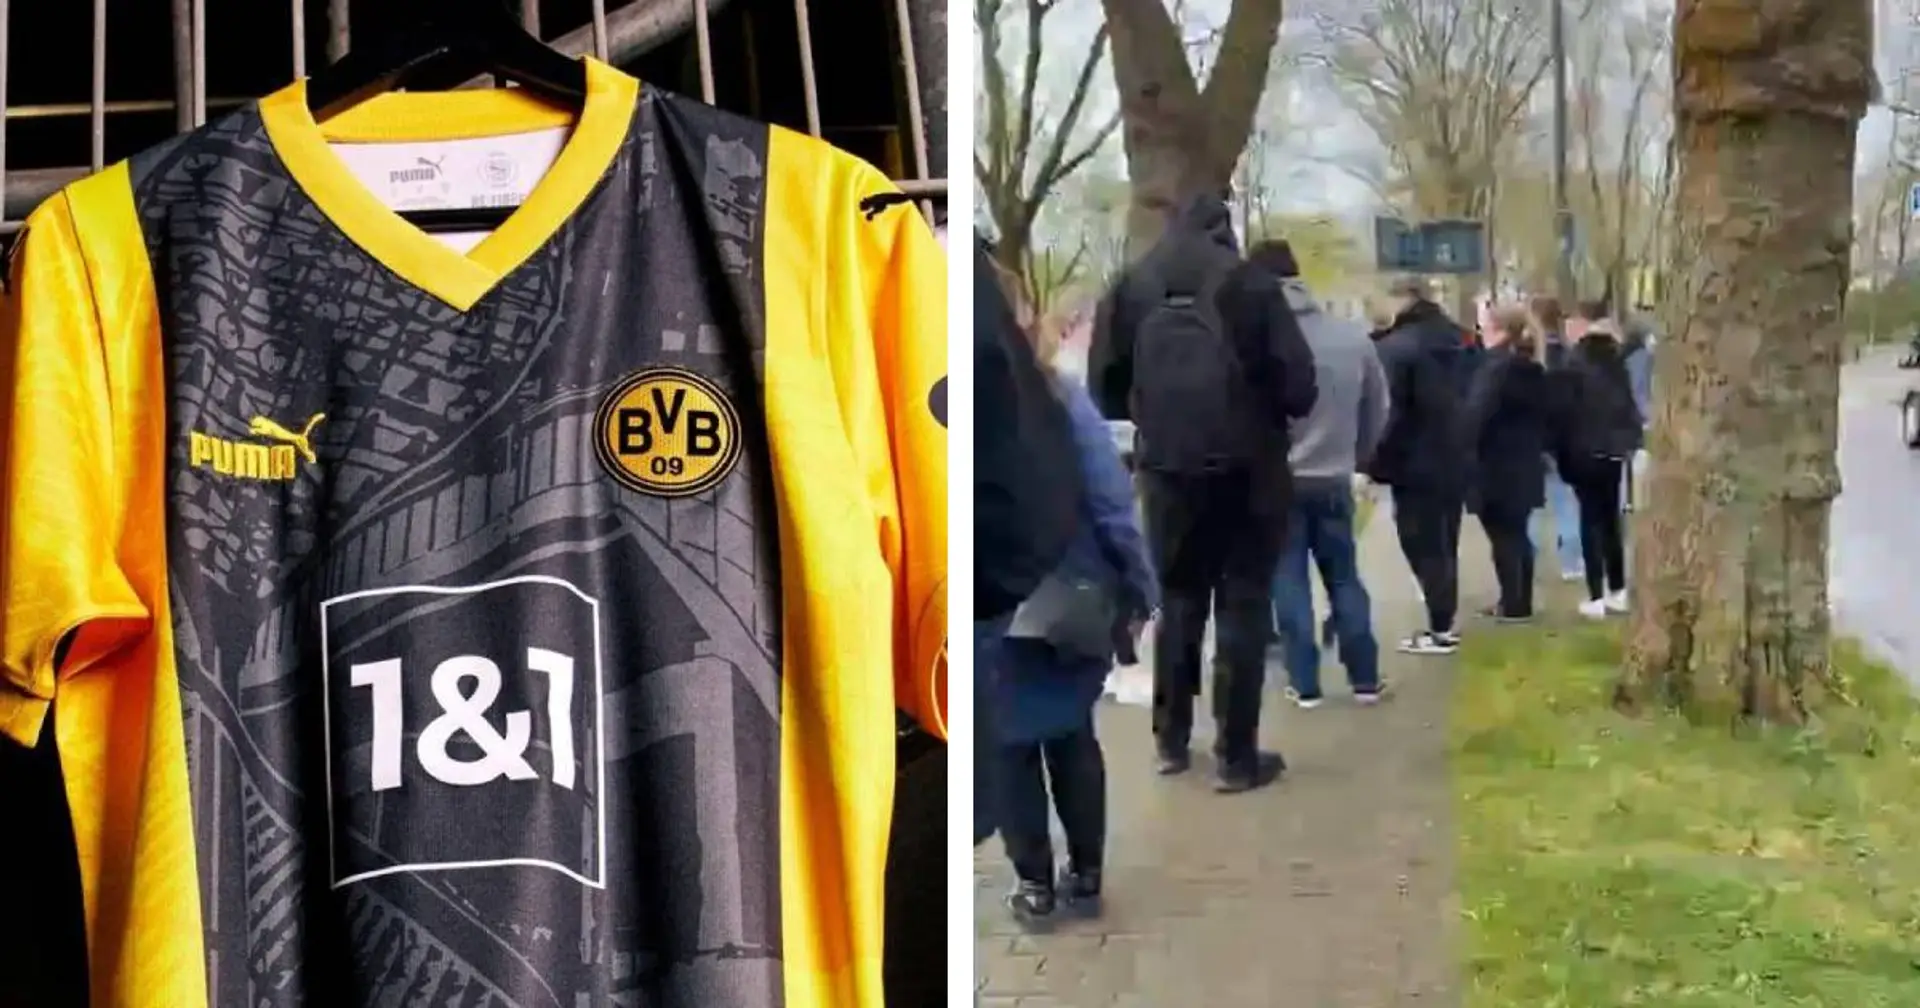 Verrückt! Hunderte BVB-Fans stehen Schlange, um das Sondertrikot anlässlich des Stadion-Geburtstags zu kaufen